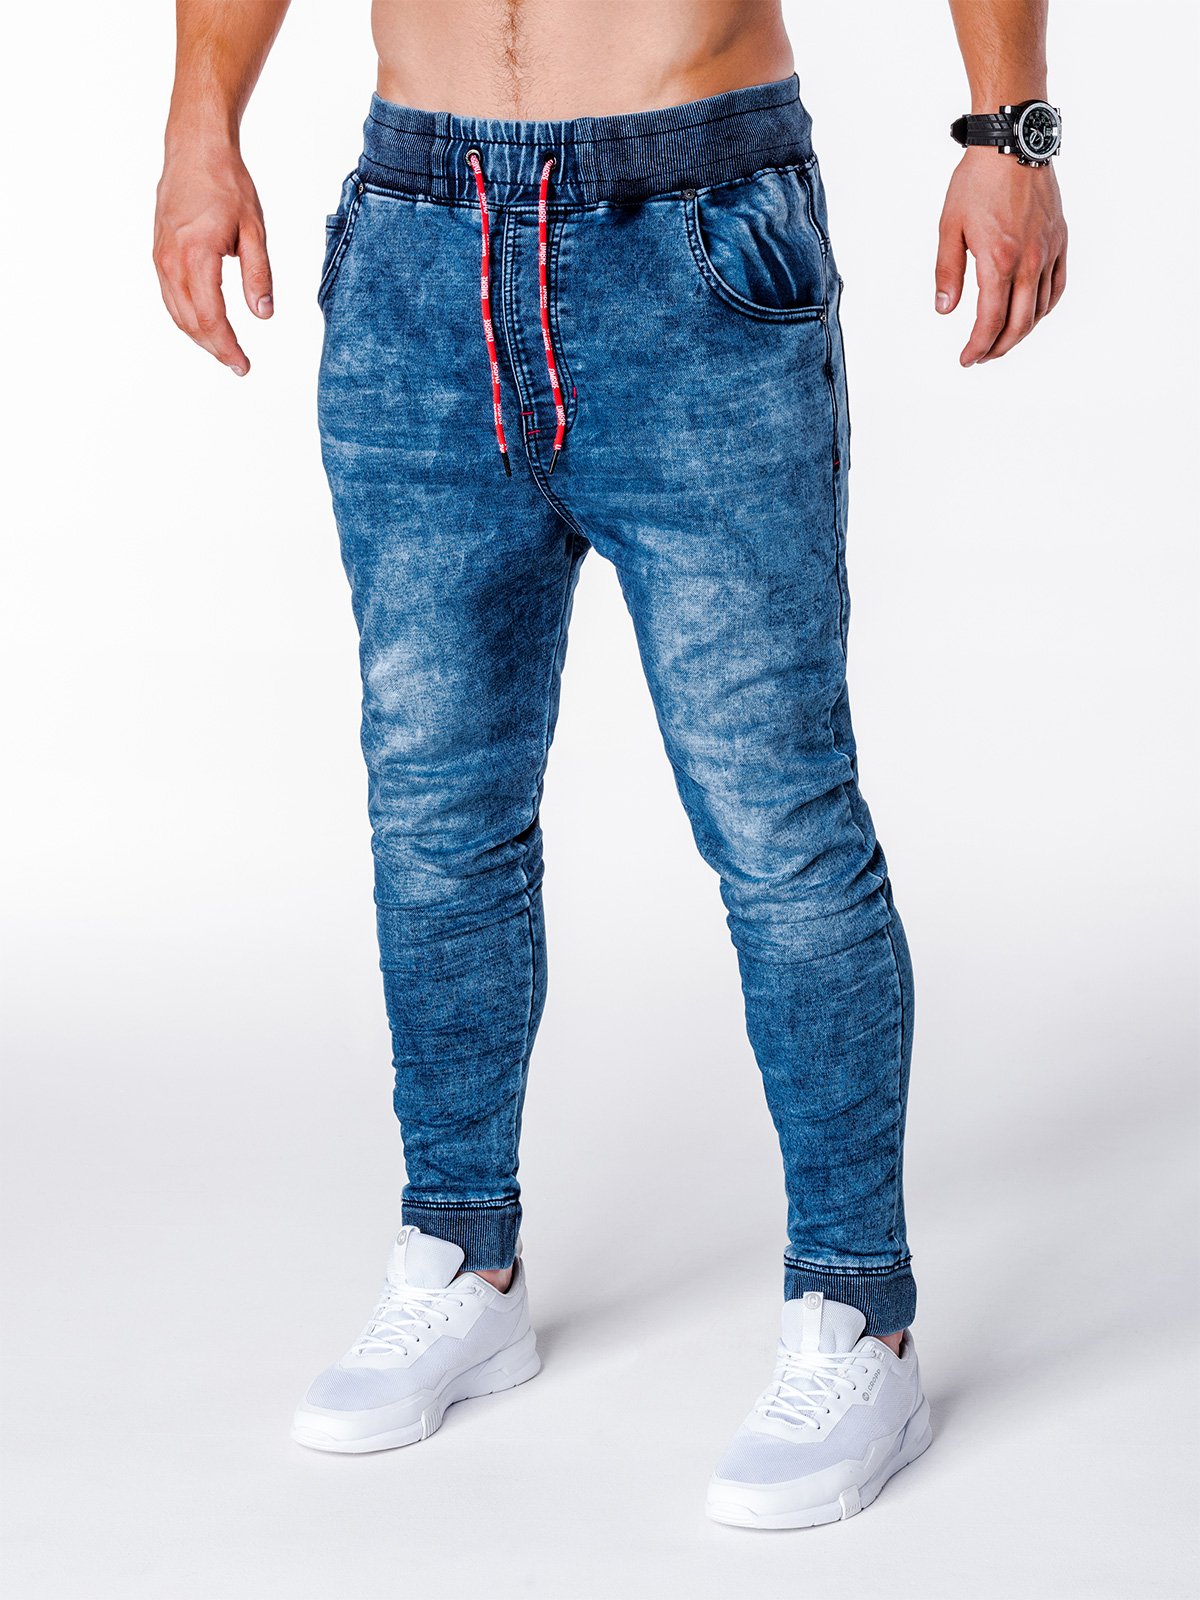 Men's jeans joggers P650 - blue | MODONE wholesale - Clothing For Men